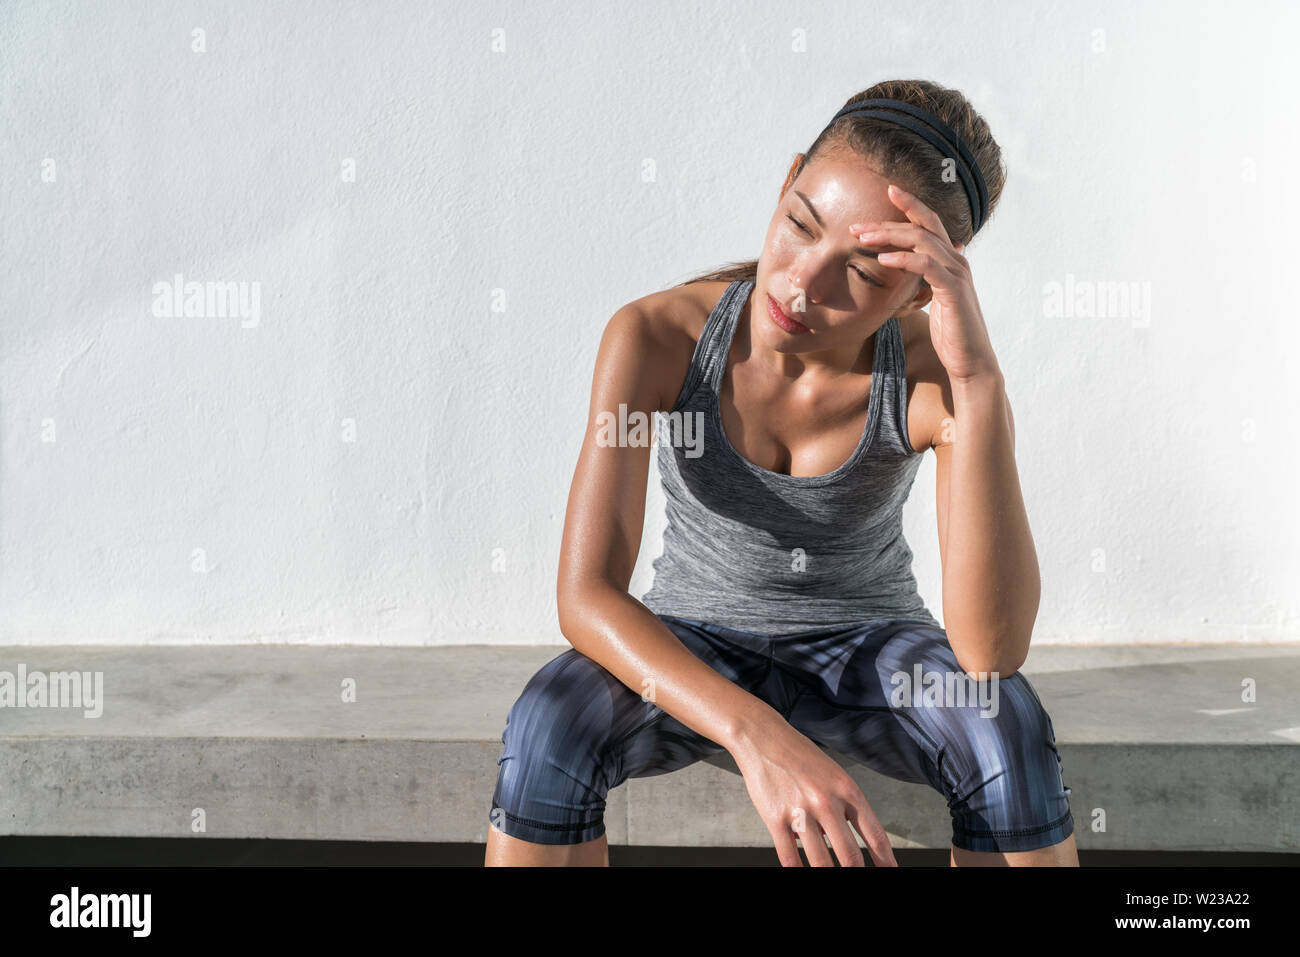 Müde fitness laufen Frau schwitzen eine Pause von cardio Workout schwierig Training. Erschöpfte Läufer sitzen mit Kopfschmerzen, Erschöpfung und Dehydrierung von Arbeiten im Fitnessbereich im Freien. Stockfoto